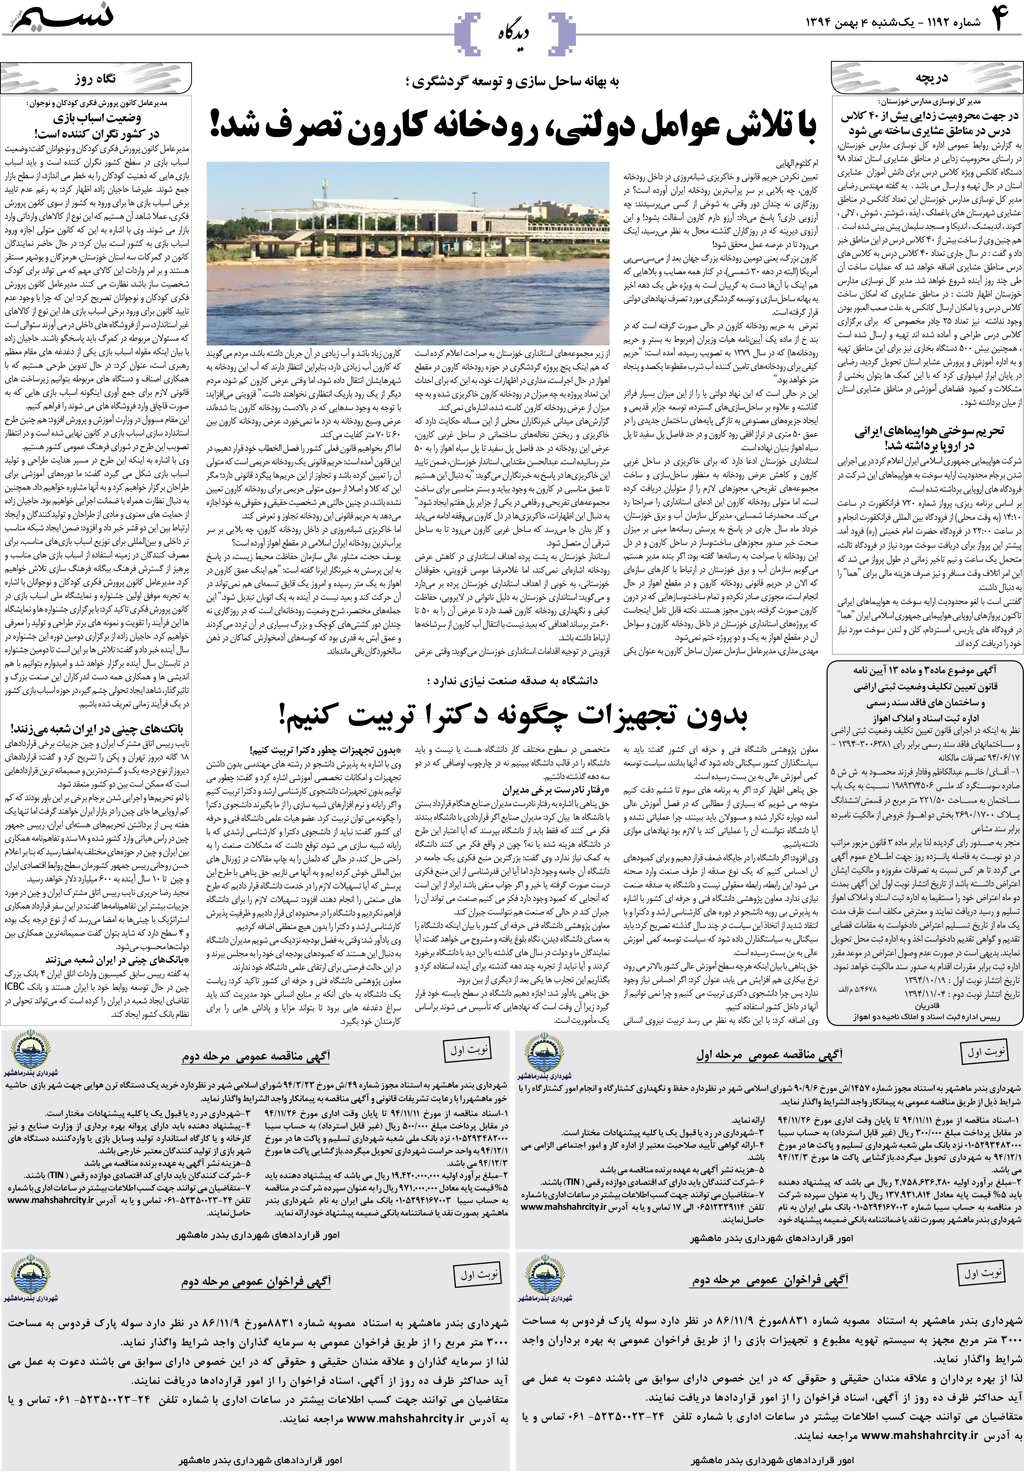 صفحه دیدگاه روزنامه نسیم شماره 1192